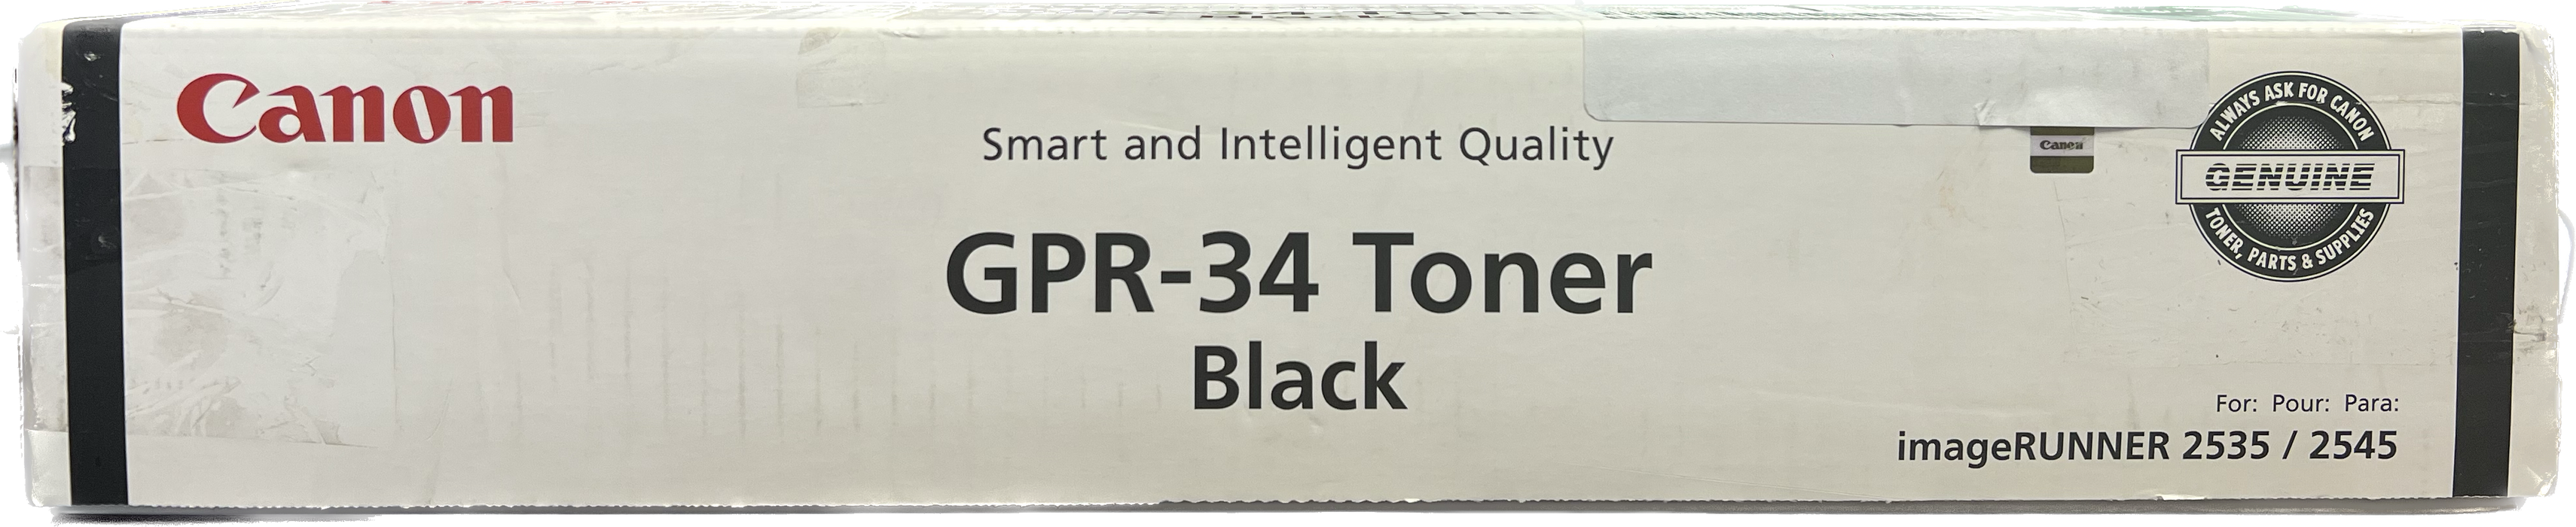 Genuine Canon Black Toner Cartridge | 2786B003 | GPR-34K